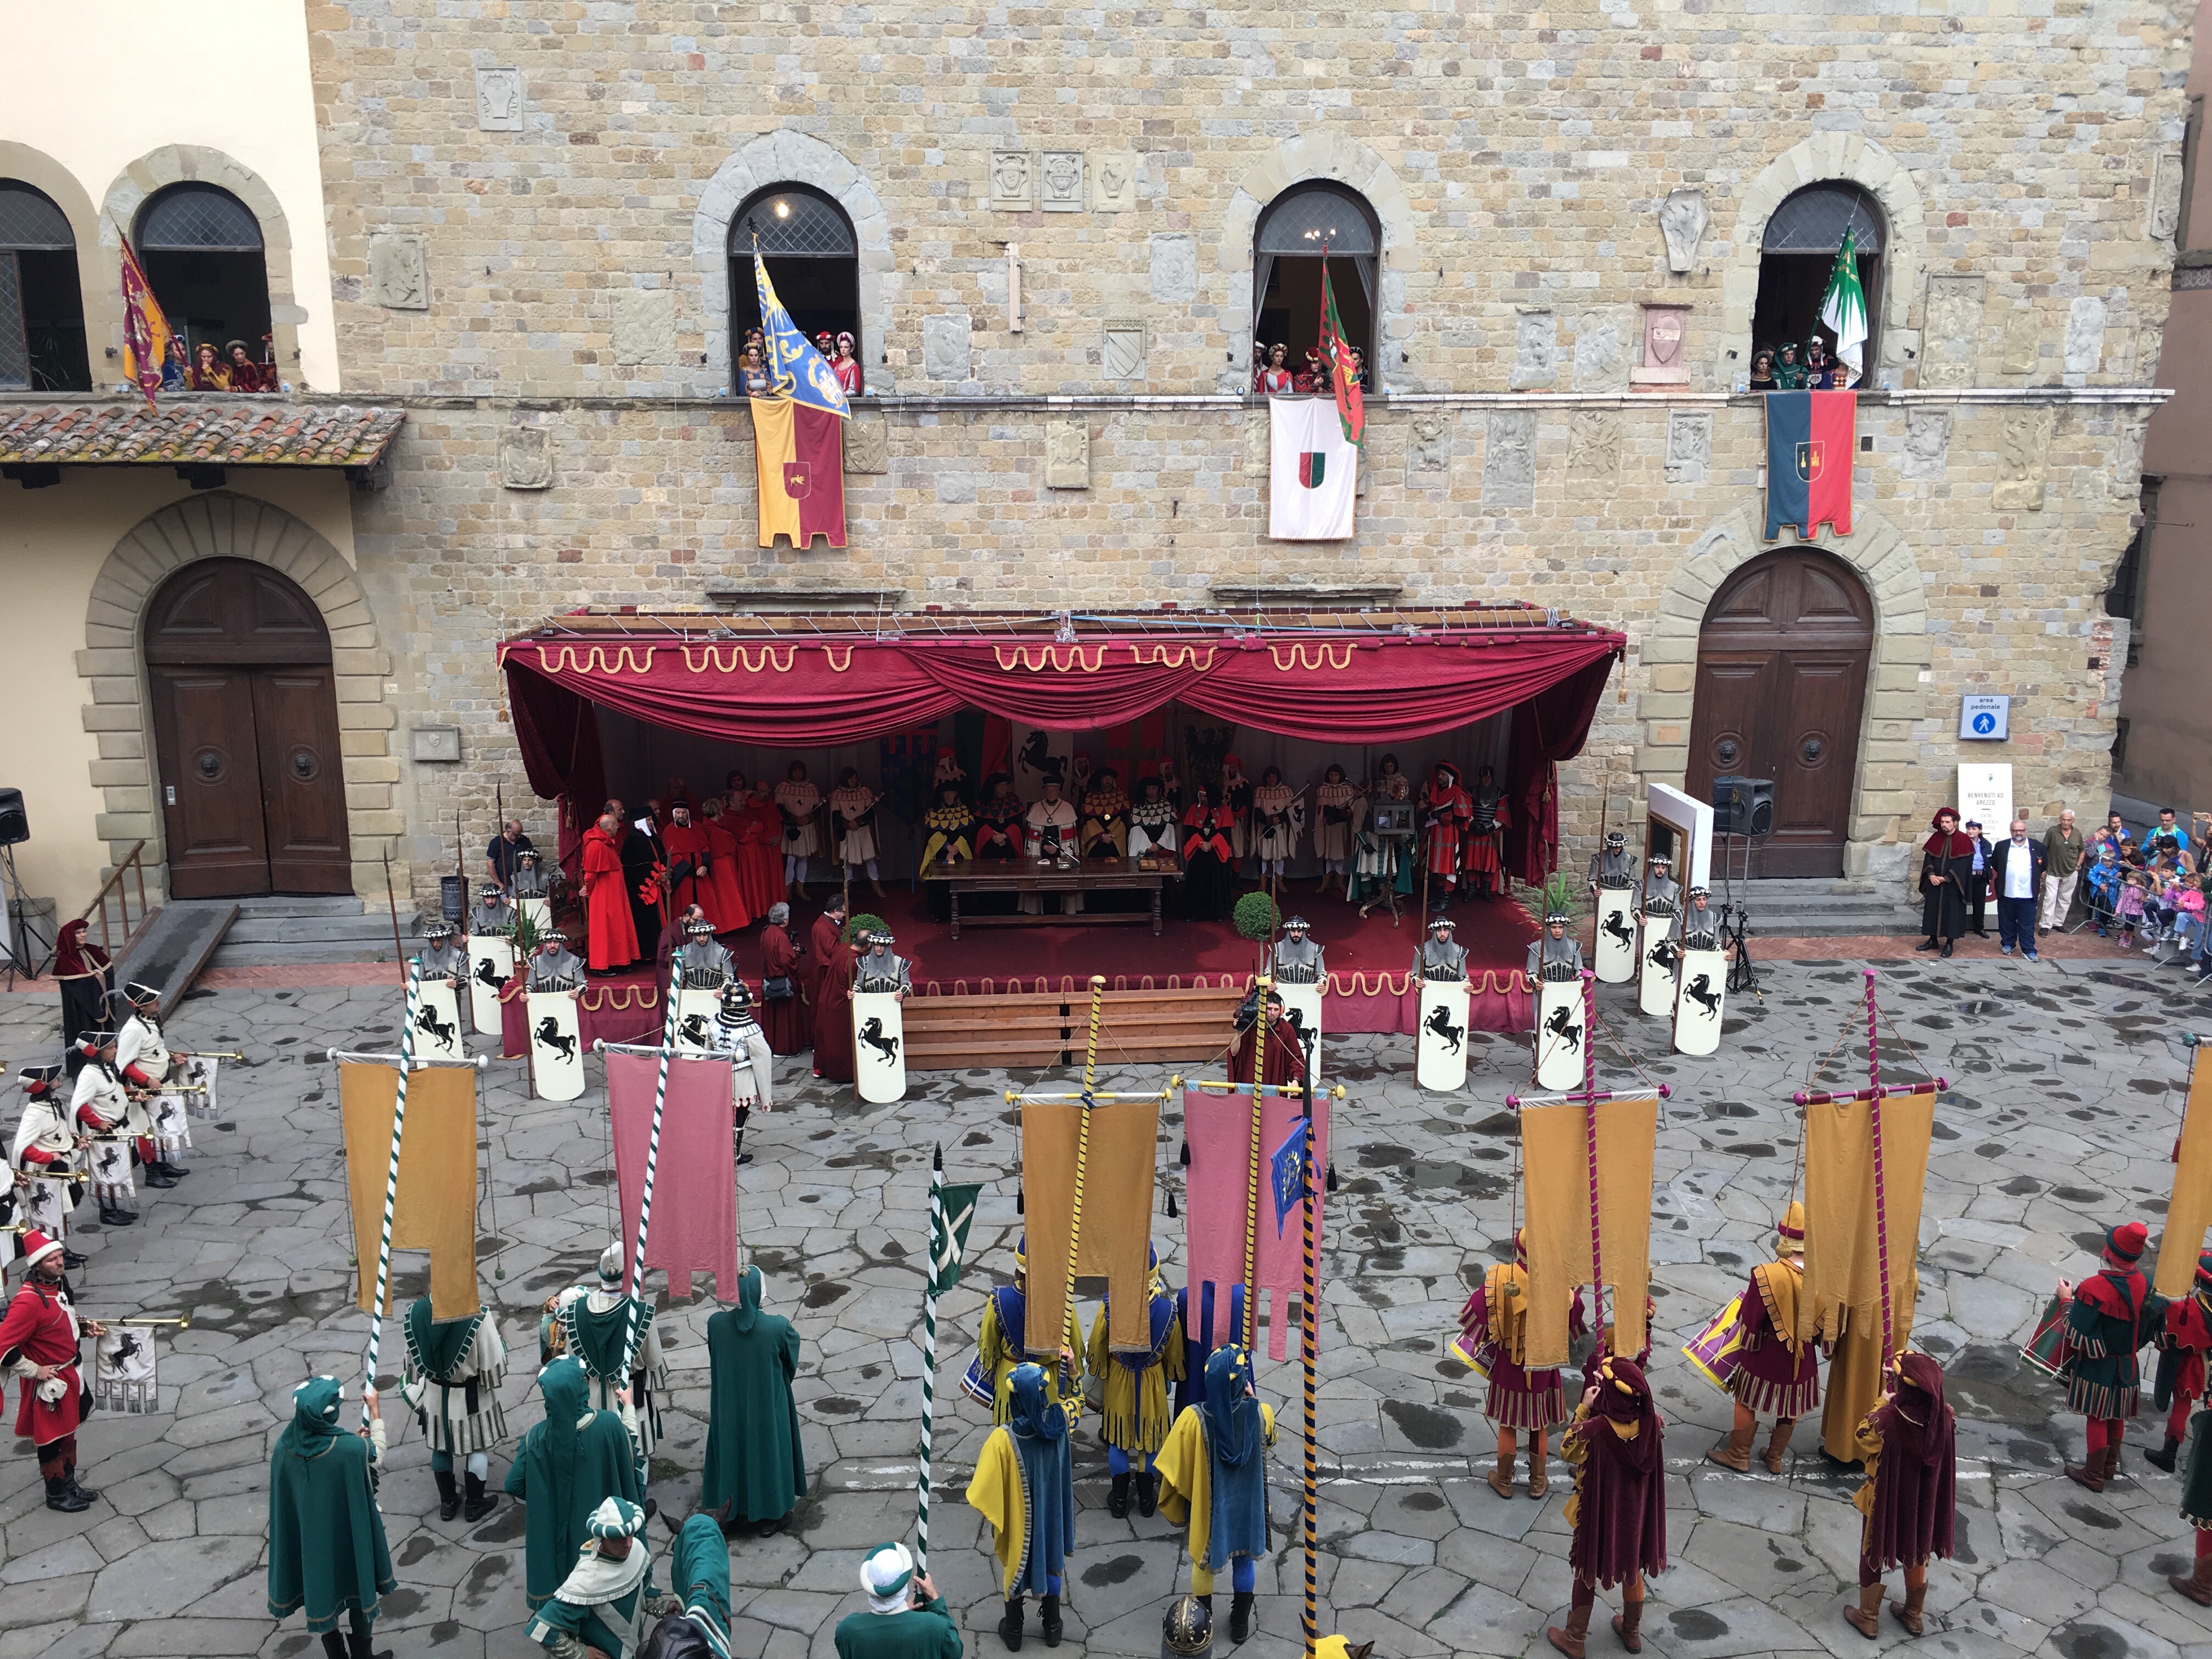 Apre la piazza Porta del Foro la chiusura come a giugno affidata a Sant’Andrea